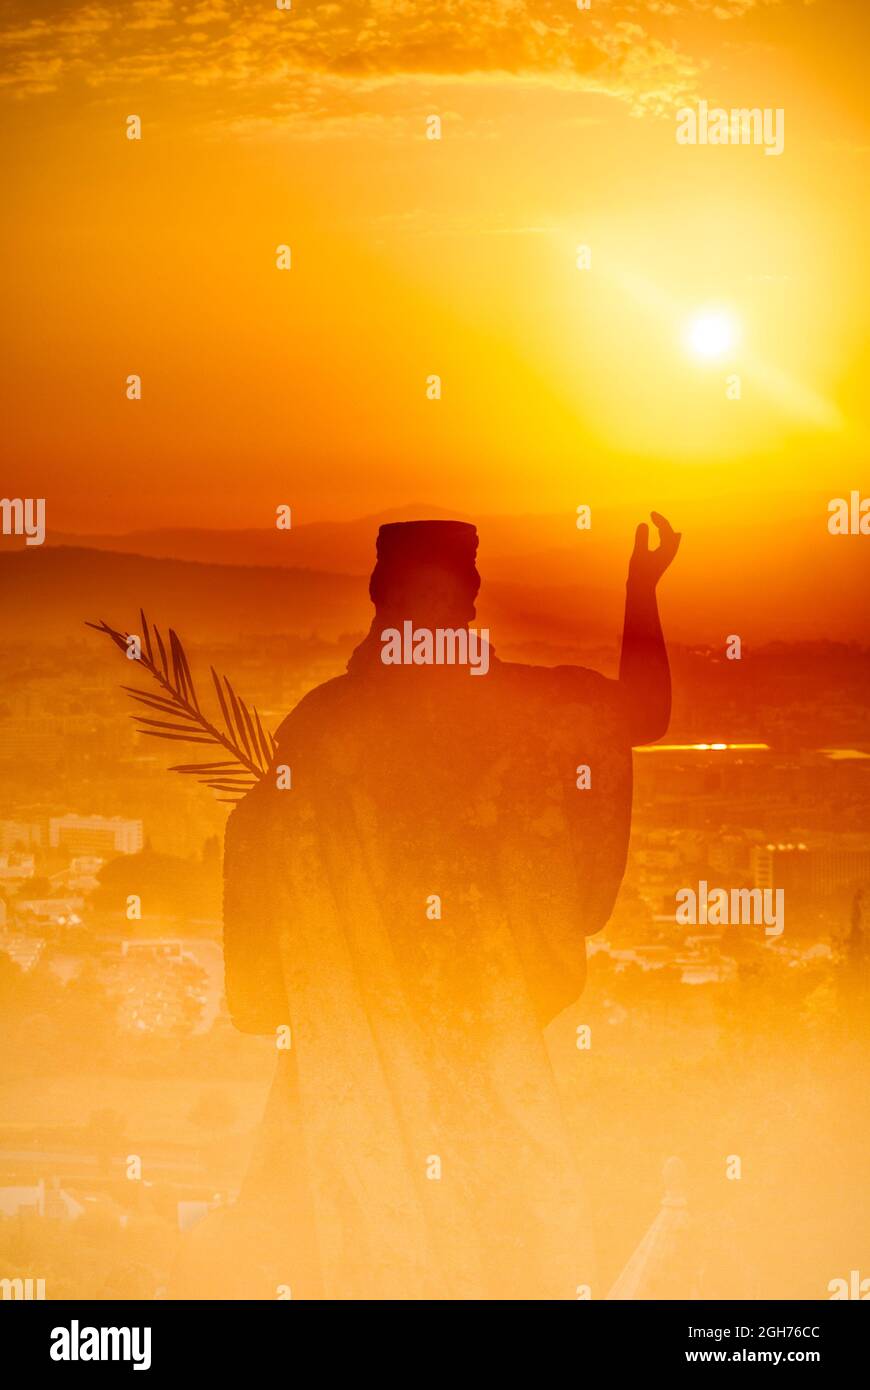 Abstraktes Bild einer Statue bei Sonnenuntergang einer Frau mit einem Palmenzweig und einer Landschaft einer Stadt darunter, Symbol des Glaubens und des Friedens Stockfoto